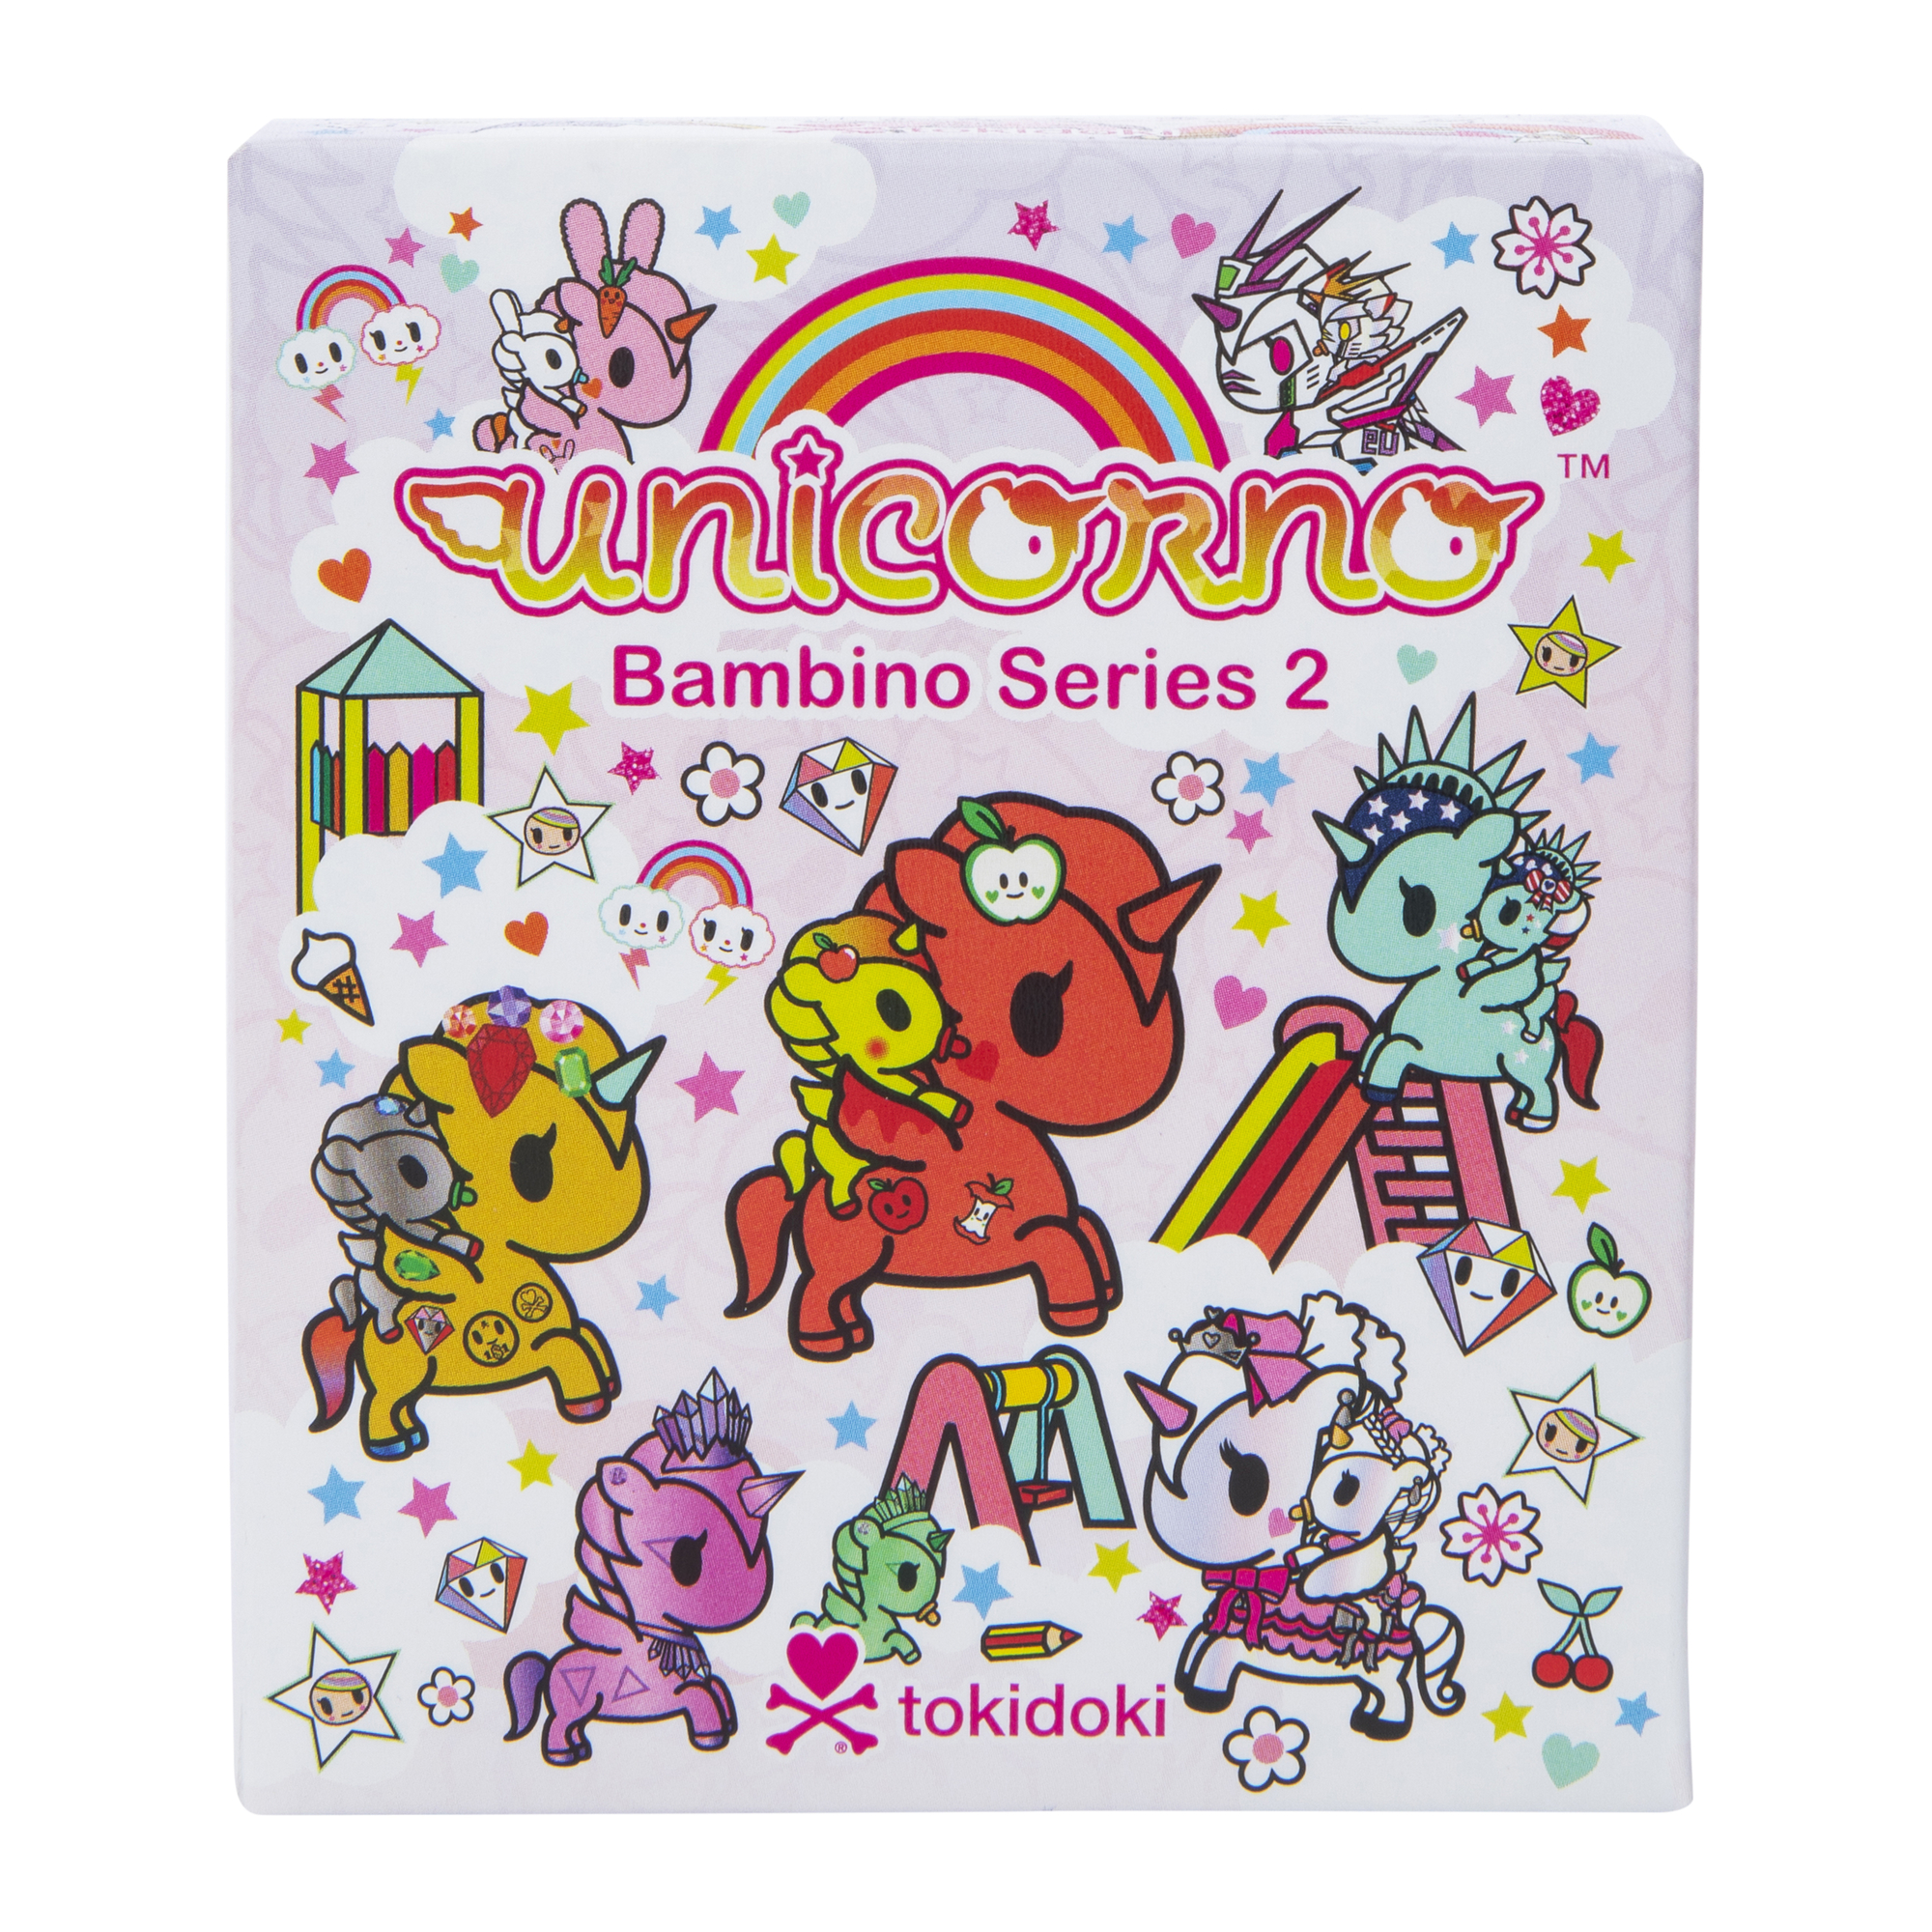 Tokidoki® Unicorno™ Bambino Series 2 Blind Box